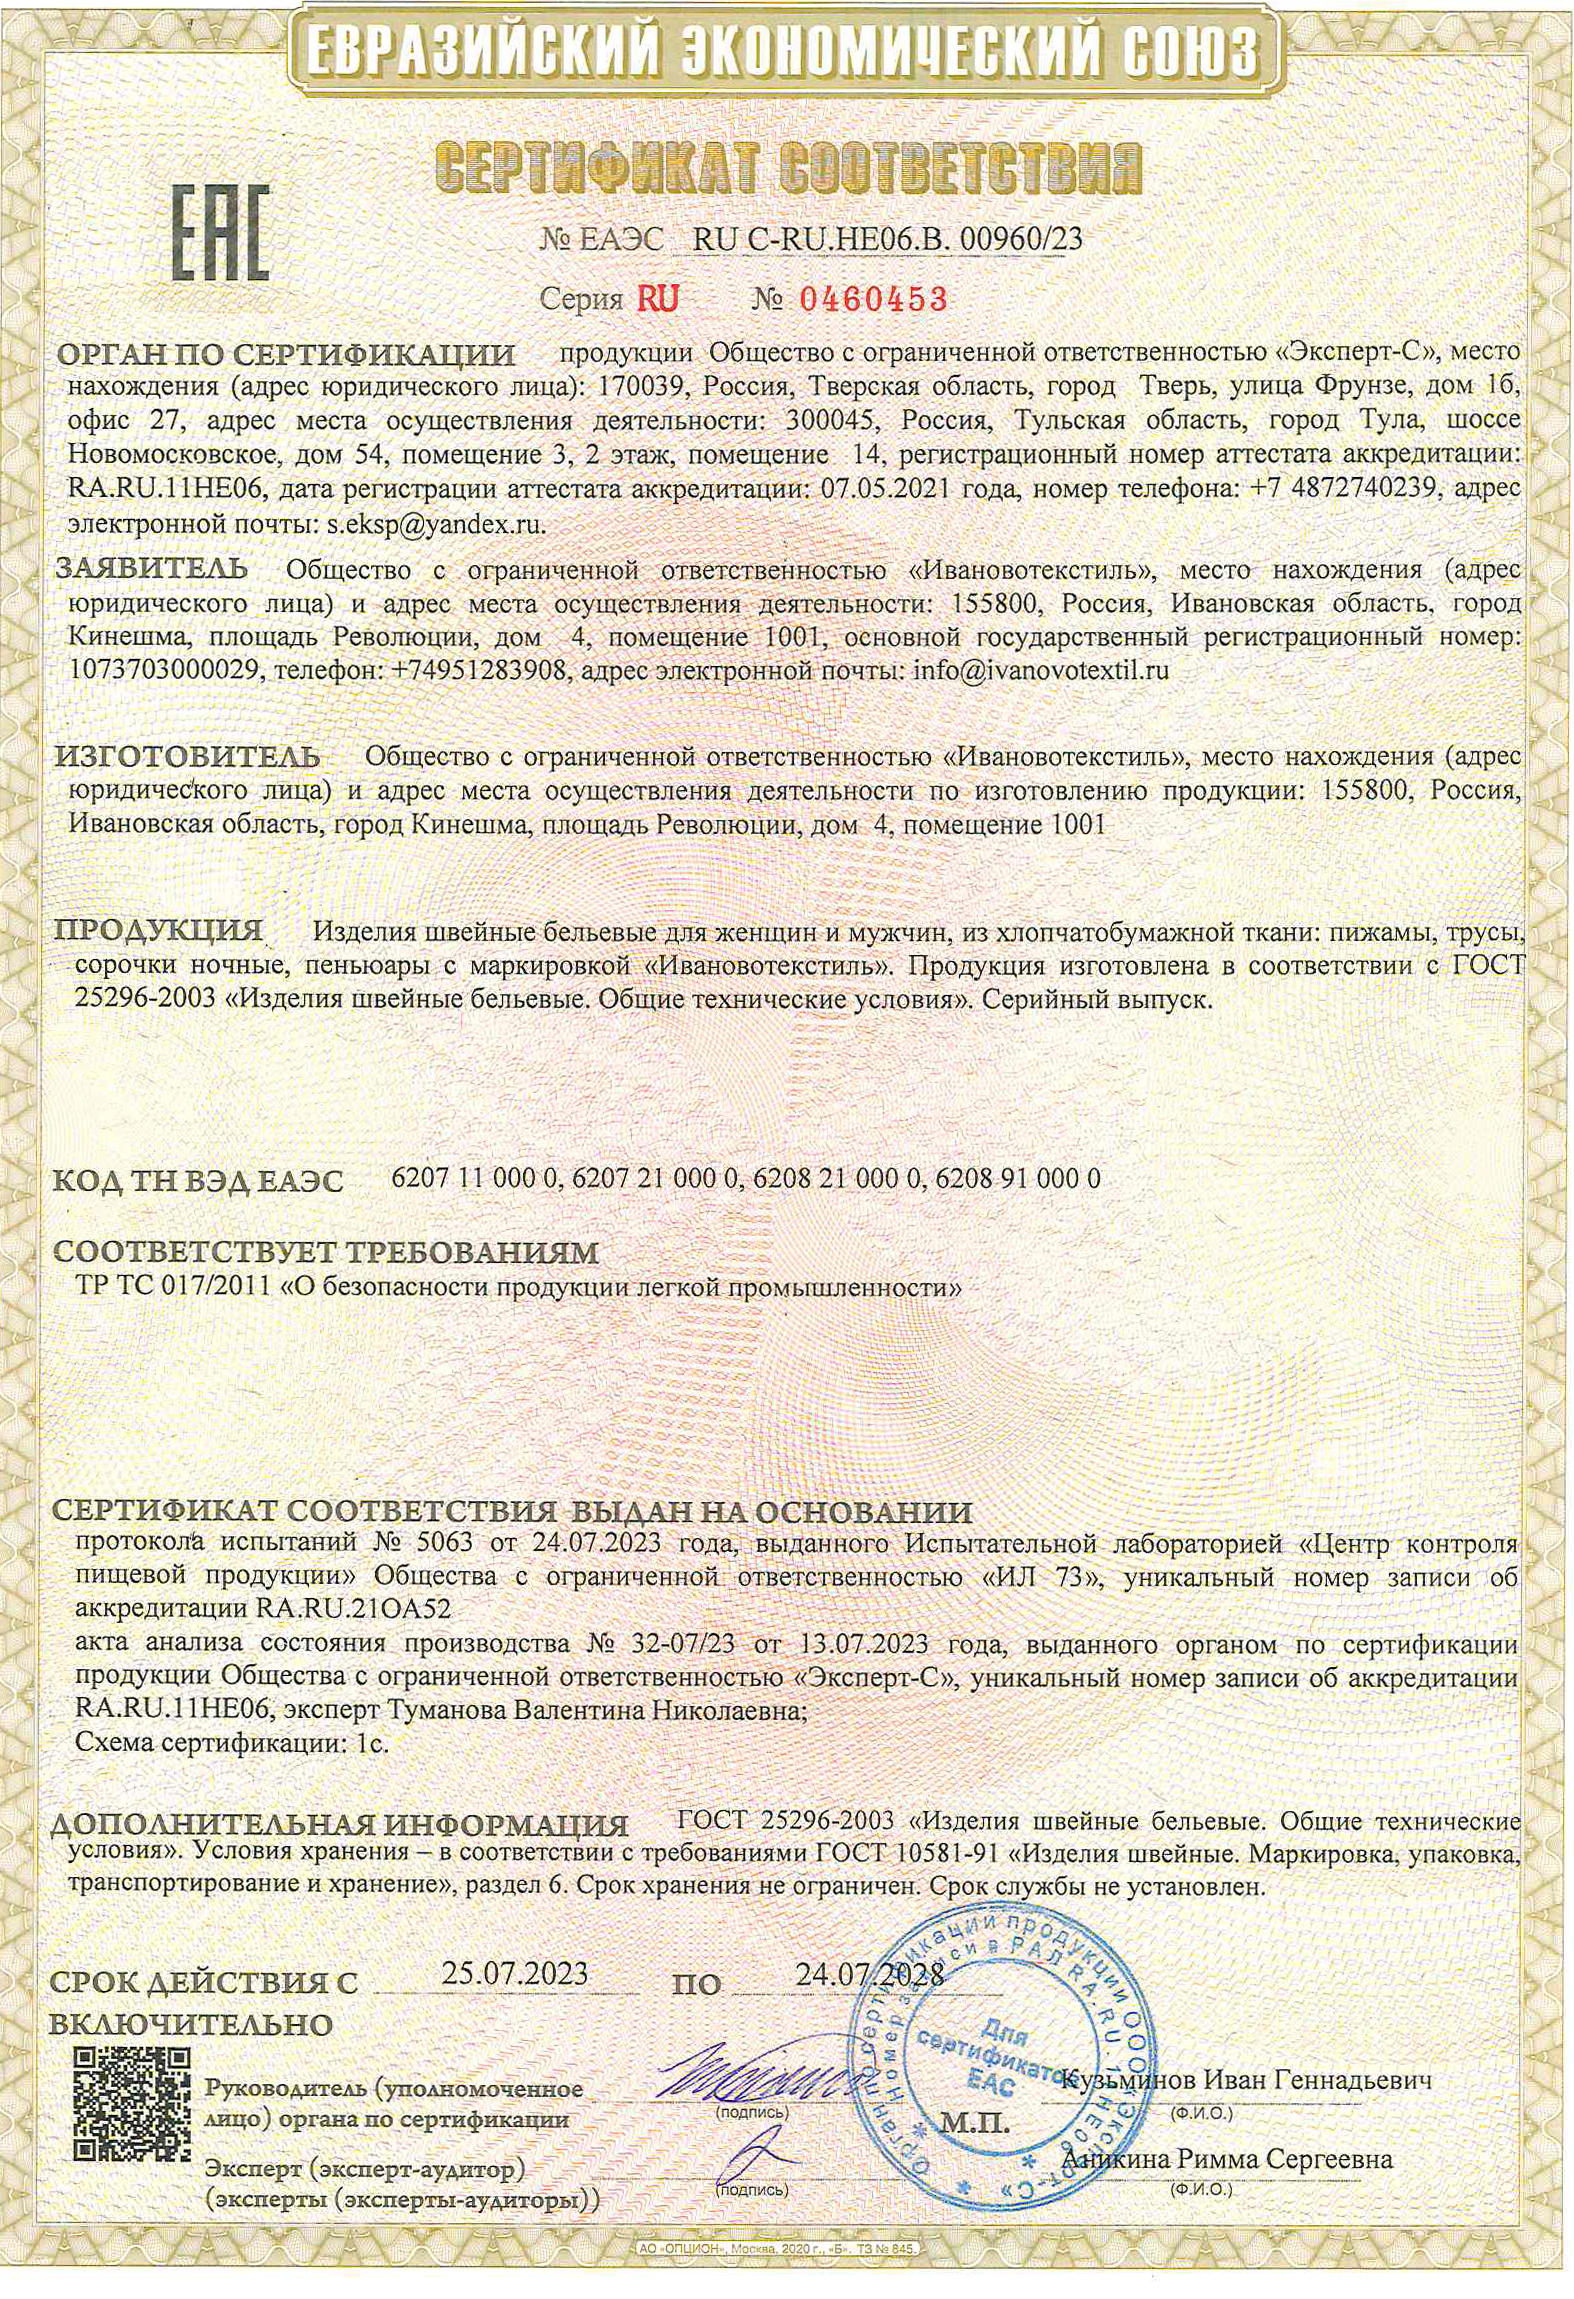 Сертификат на изделия швейные бельевые для женщин и мужчин из хлопчатобумажной ткани до 24.07.2028 г